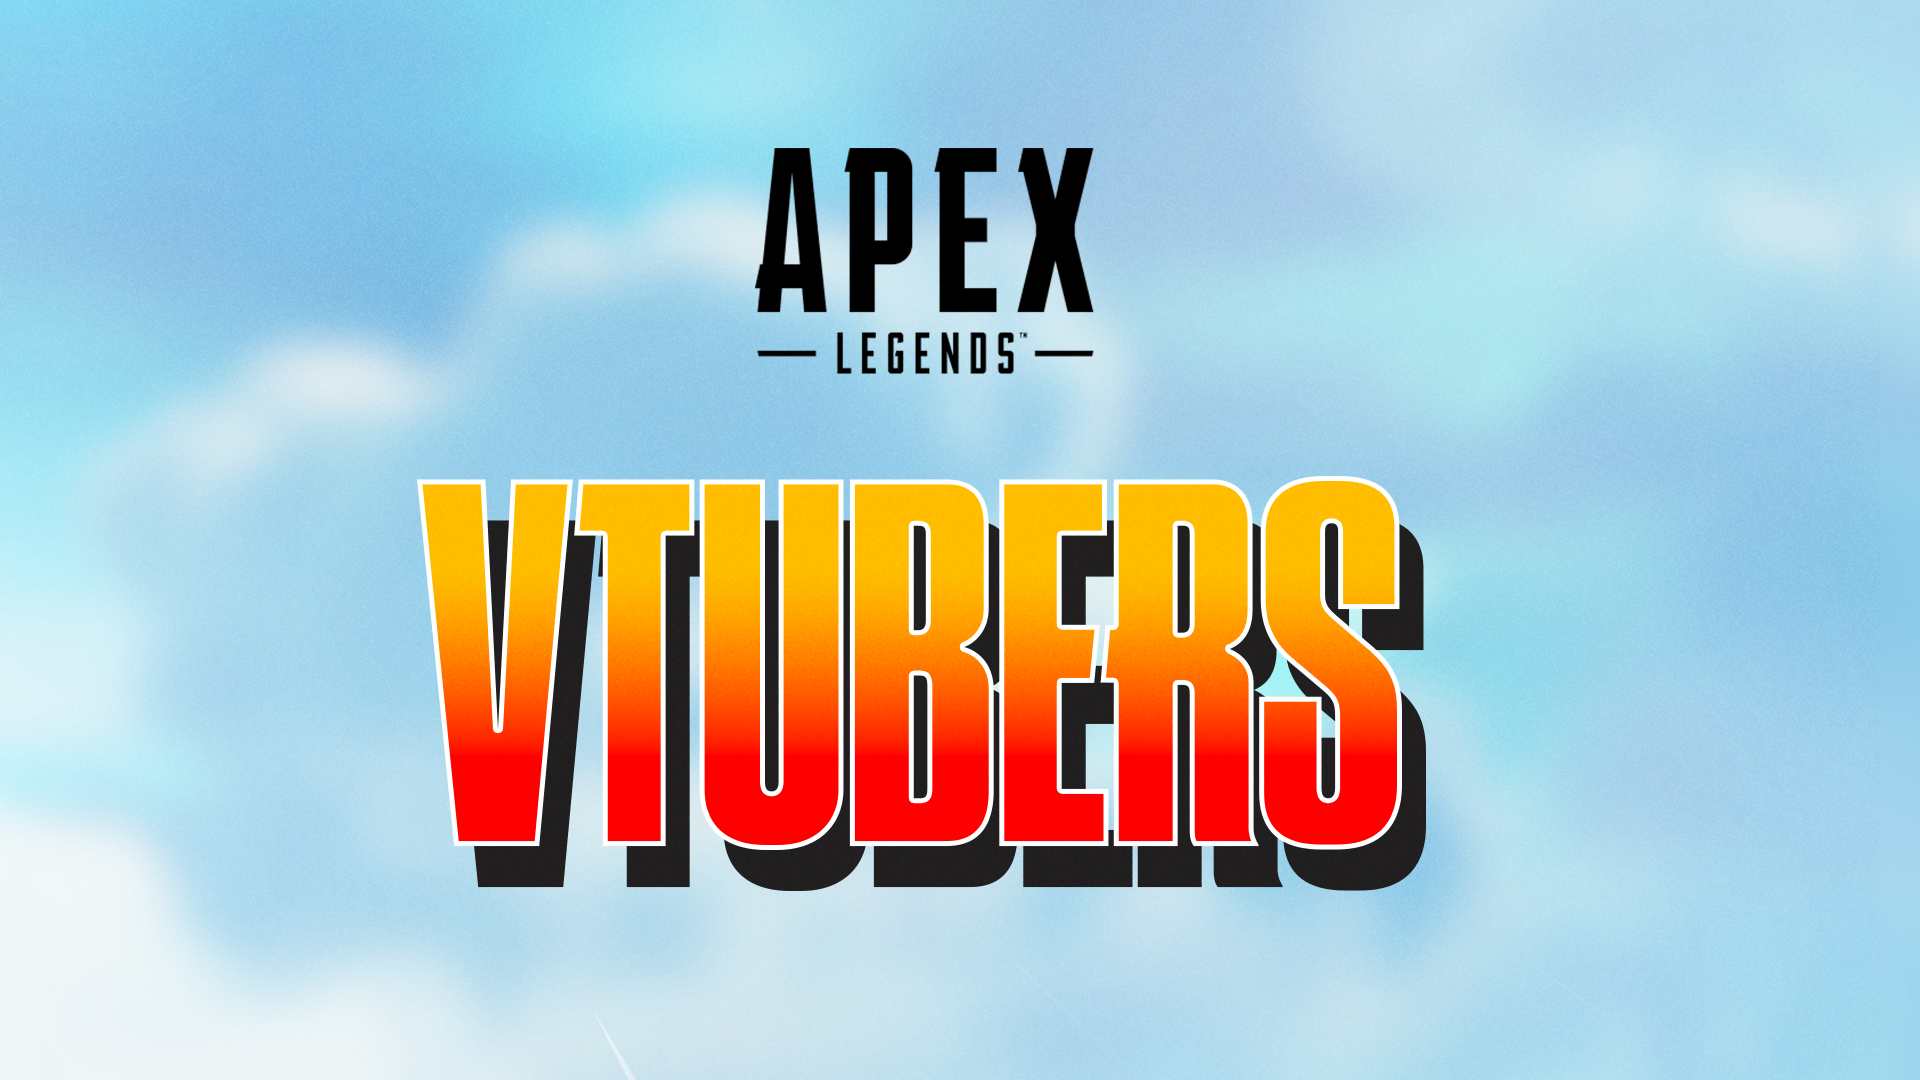 Full Anime Event Store for Apex Legends apexlegendsnews apexlegends    TikTok